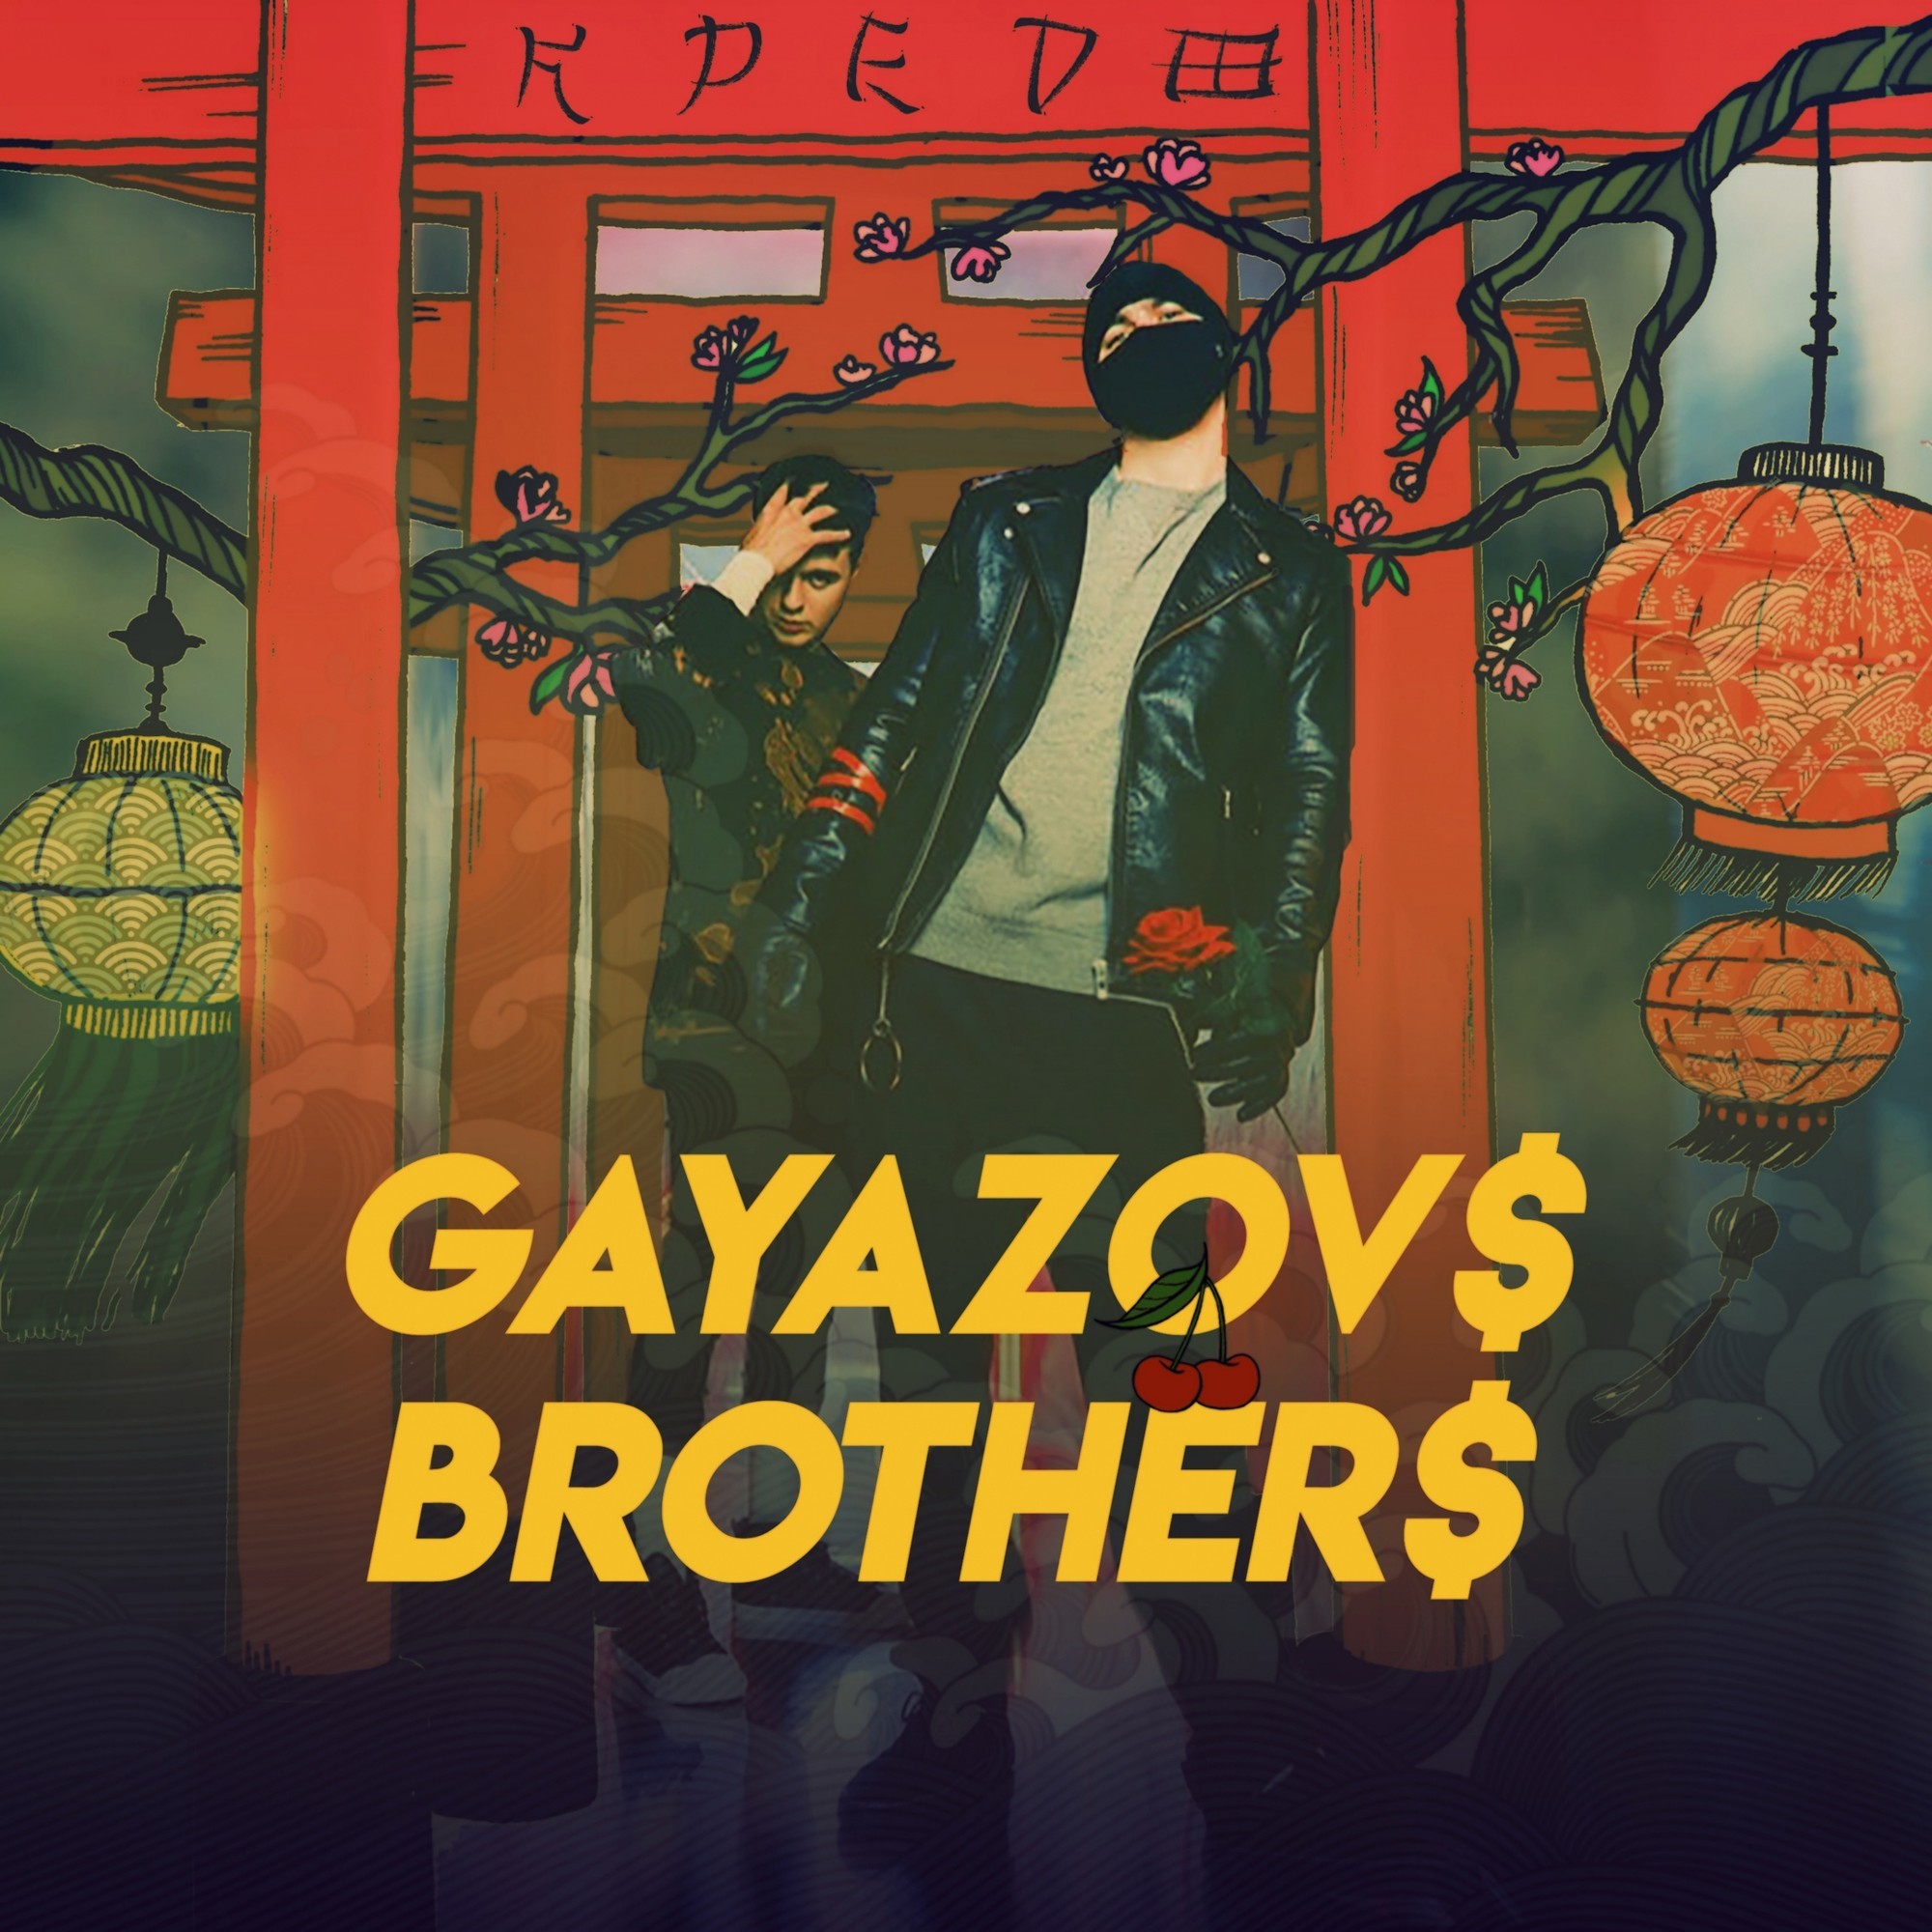 Gayazov brother альбомы. Братья GAYAZOV$ brother$. Обложка Гаязов Бразер. Альбом кредо GAYAZOV$ brother$.